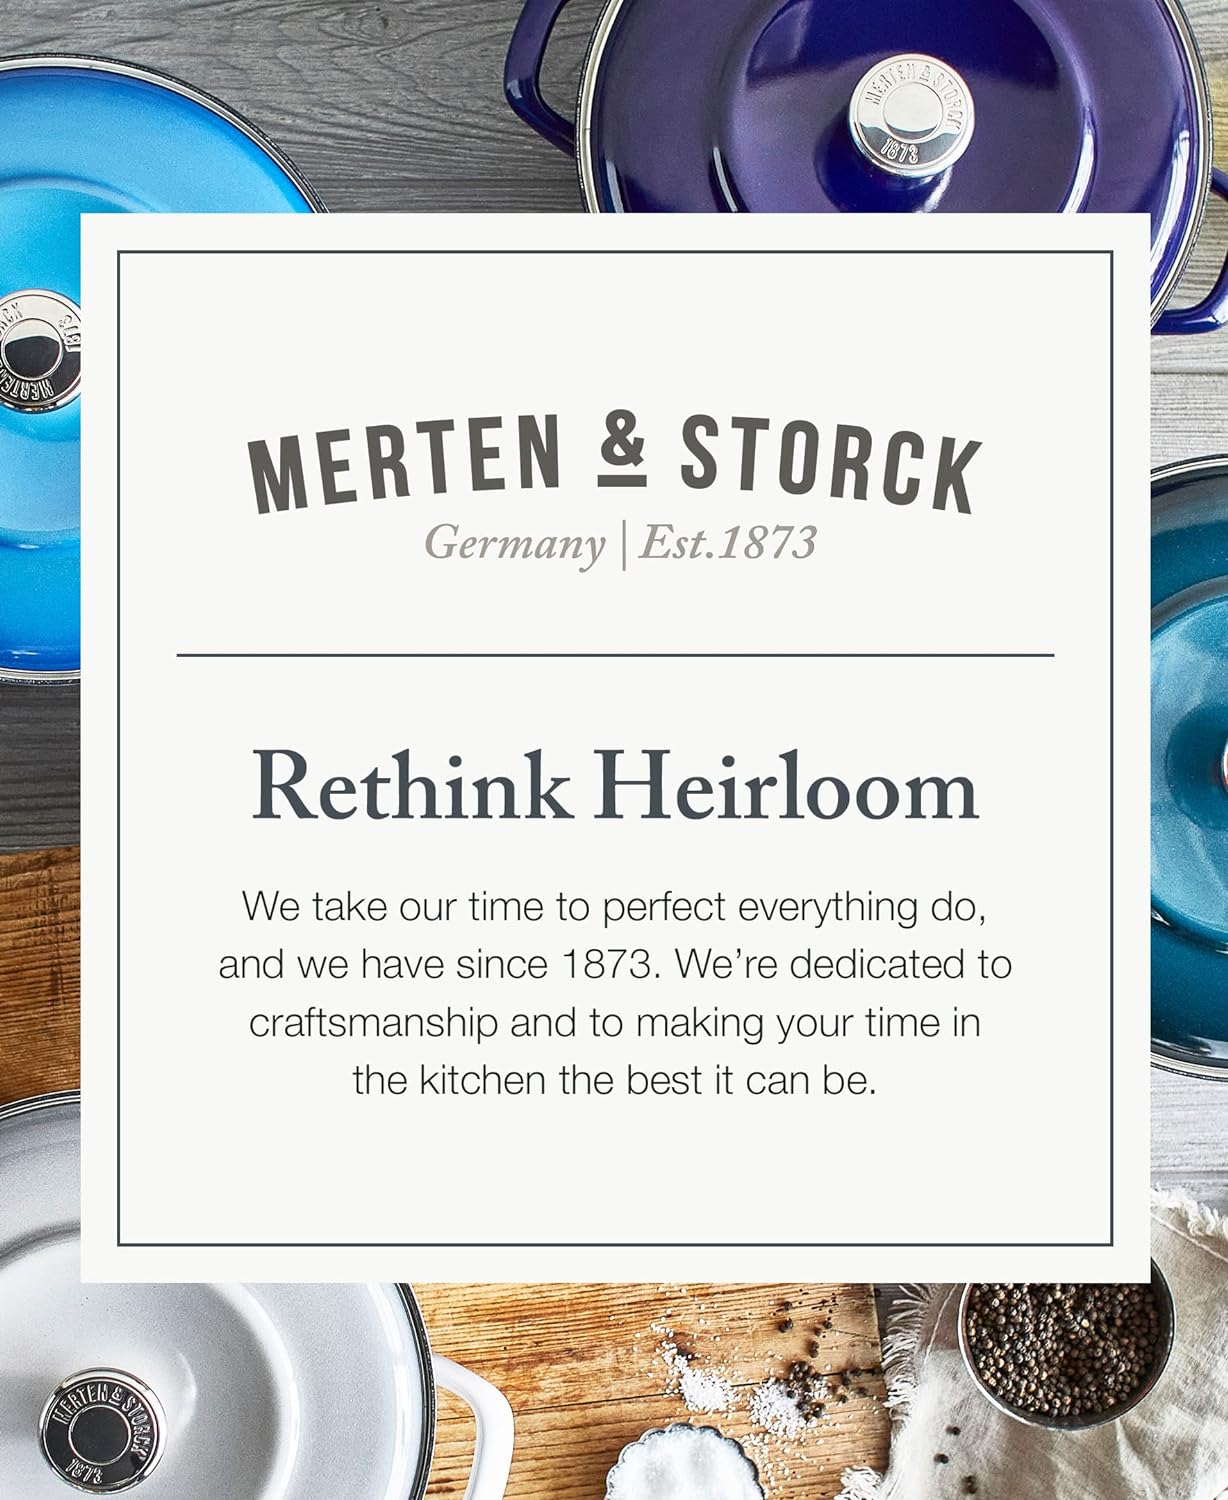 Merten & Storck Enameled Iron 1873 Dutch Oven, 7-Quart